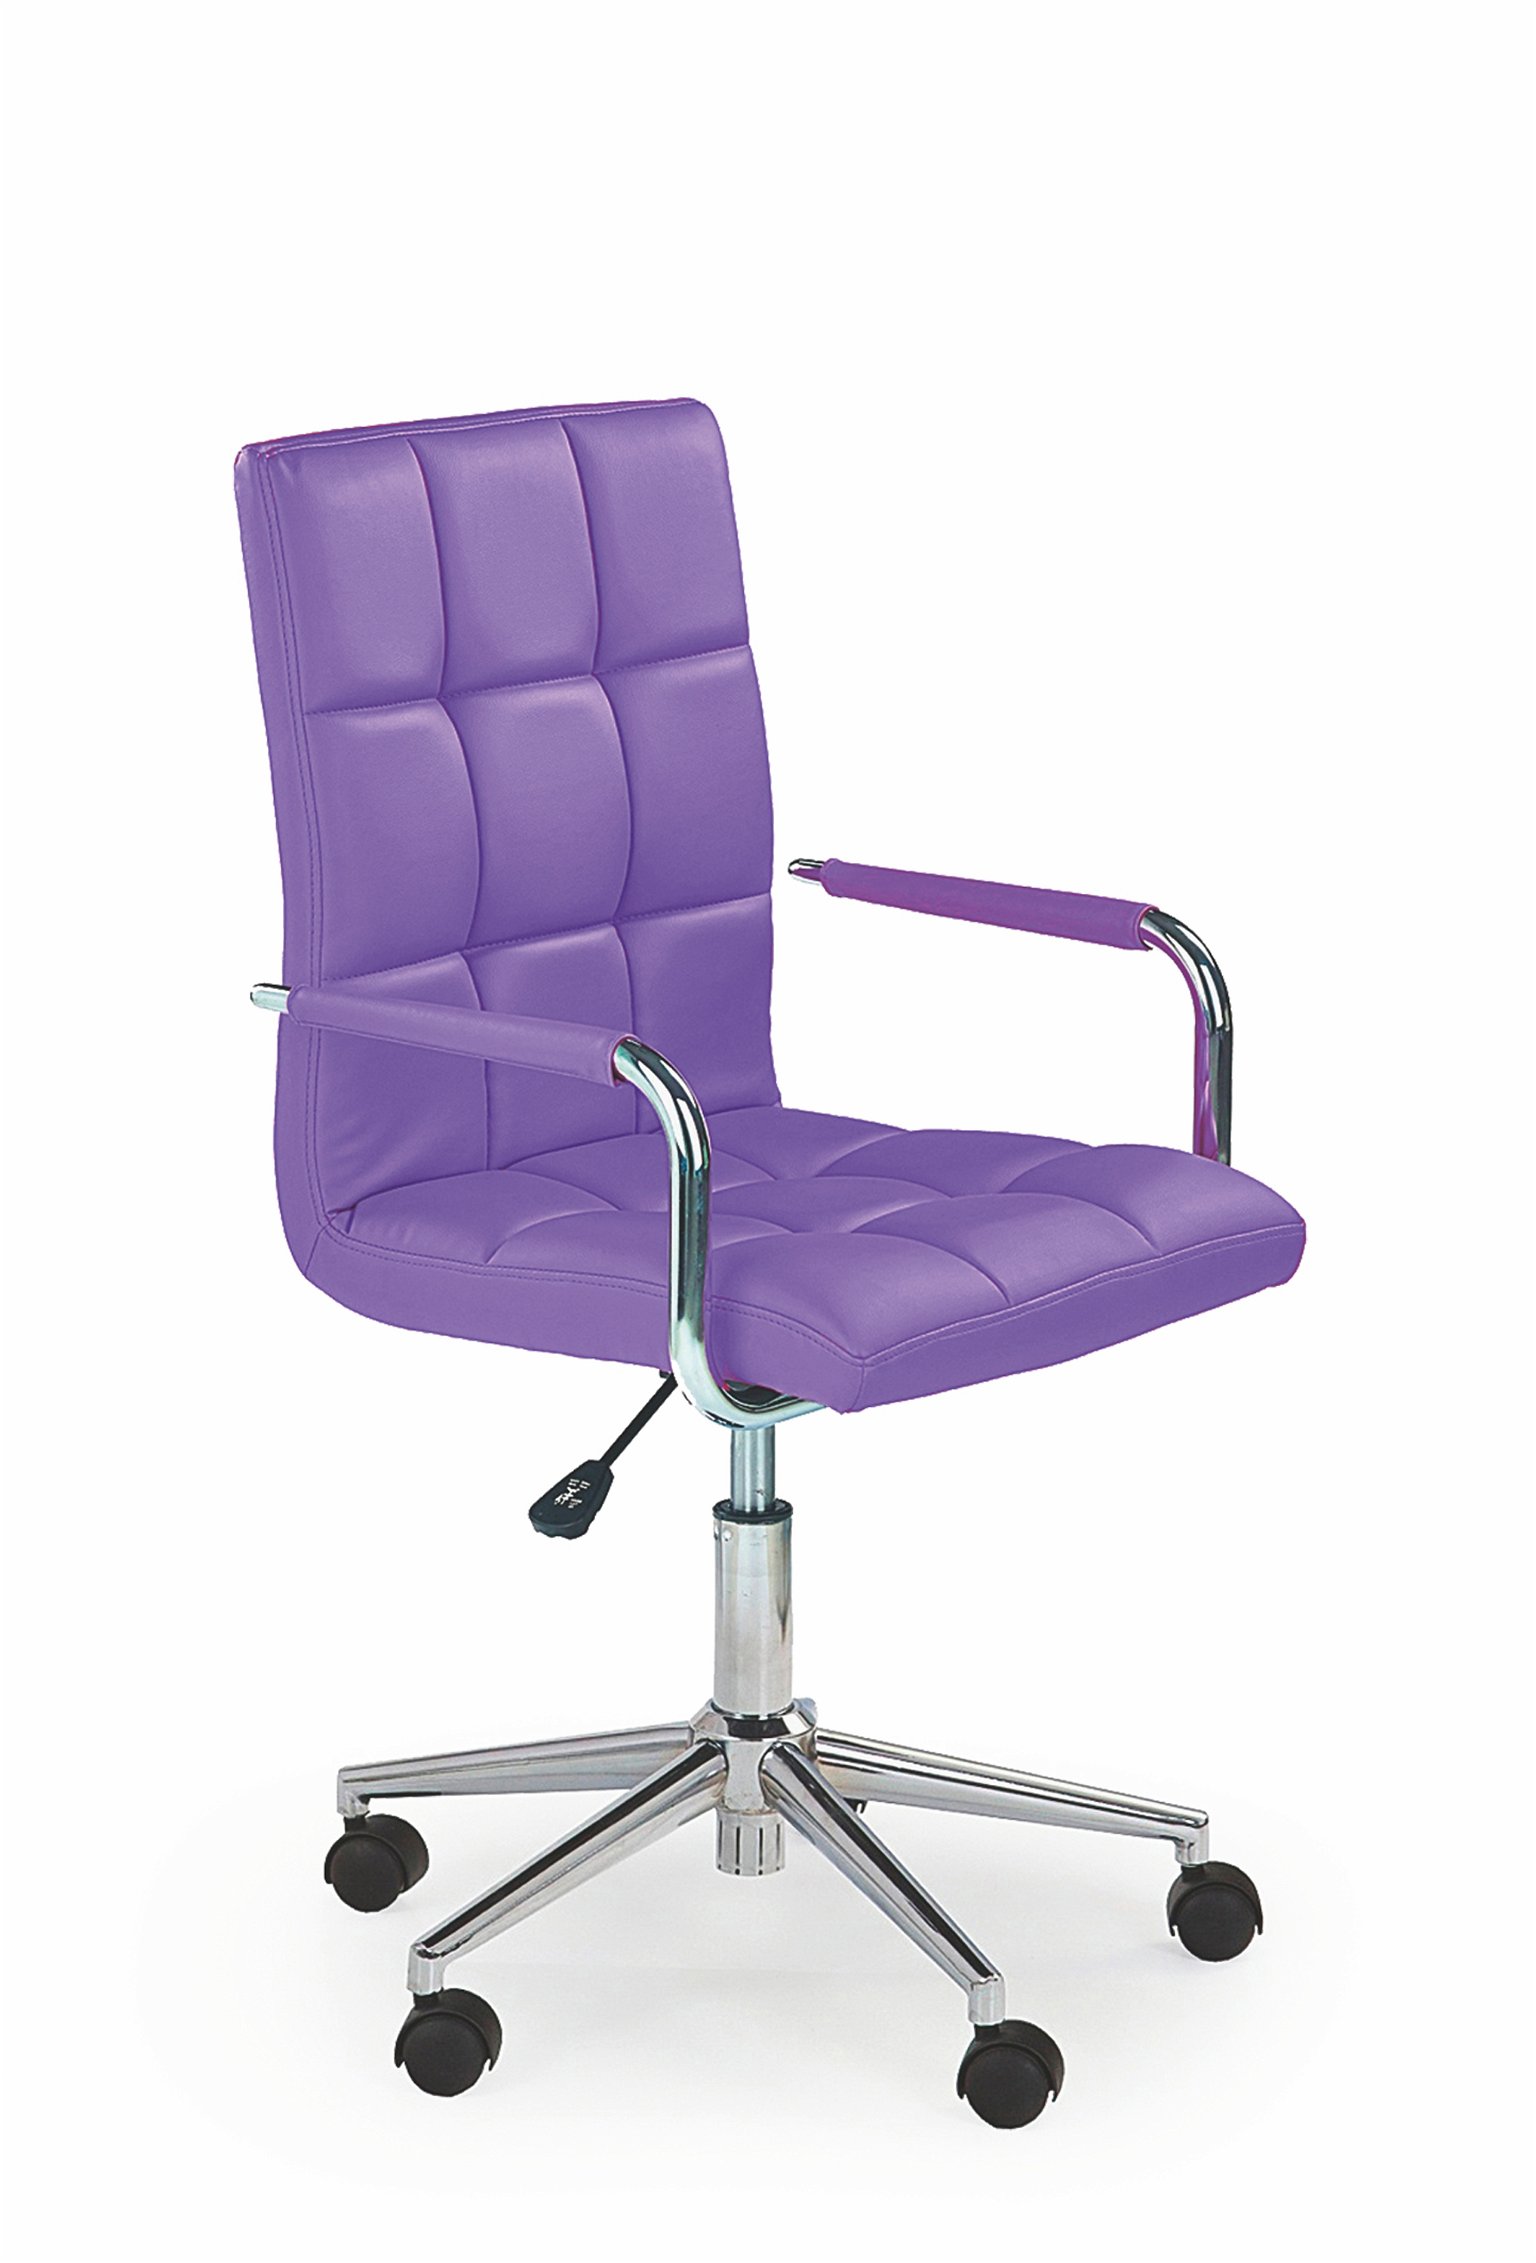 Vaikiška kėdė GONZO 2, violetinė